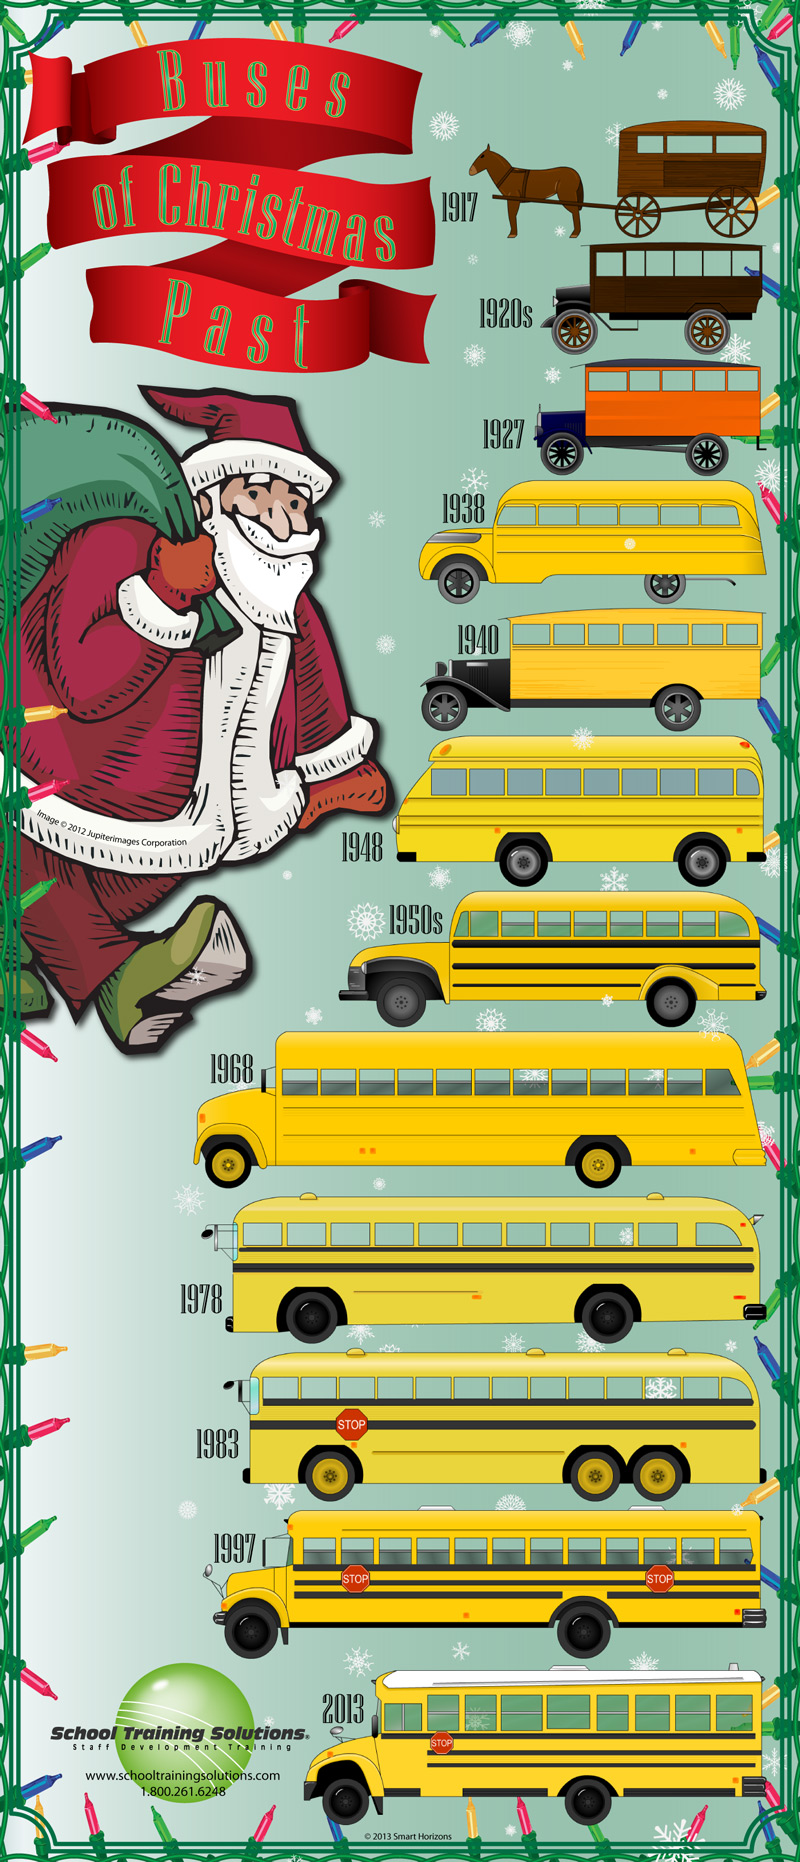 Buses of Christmas Past